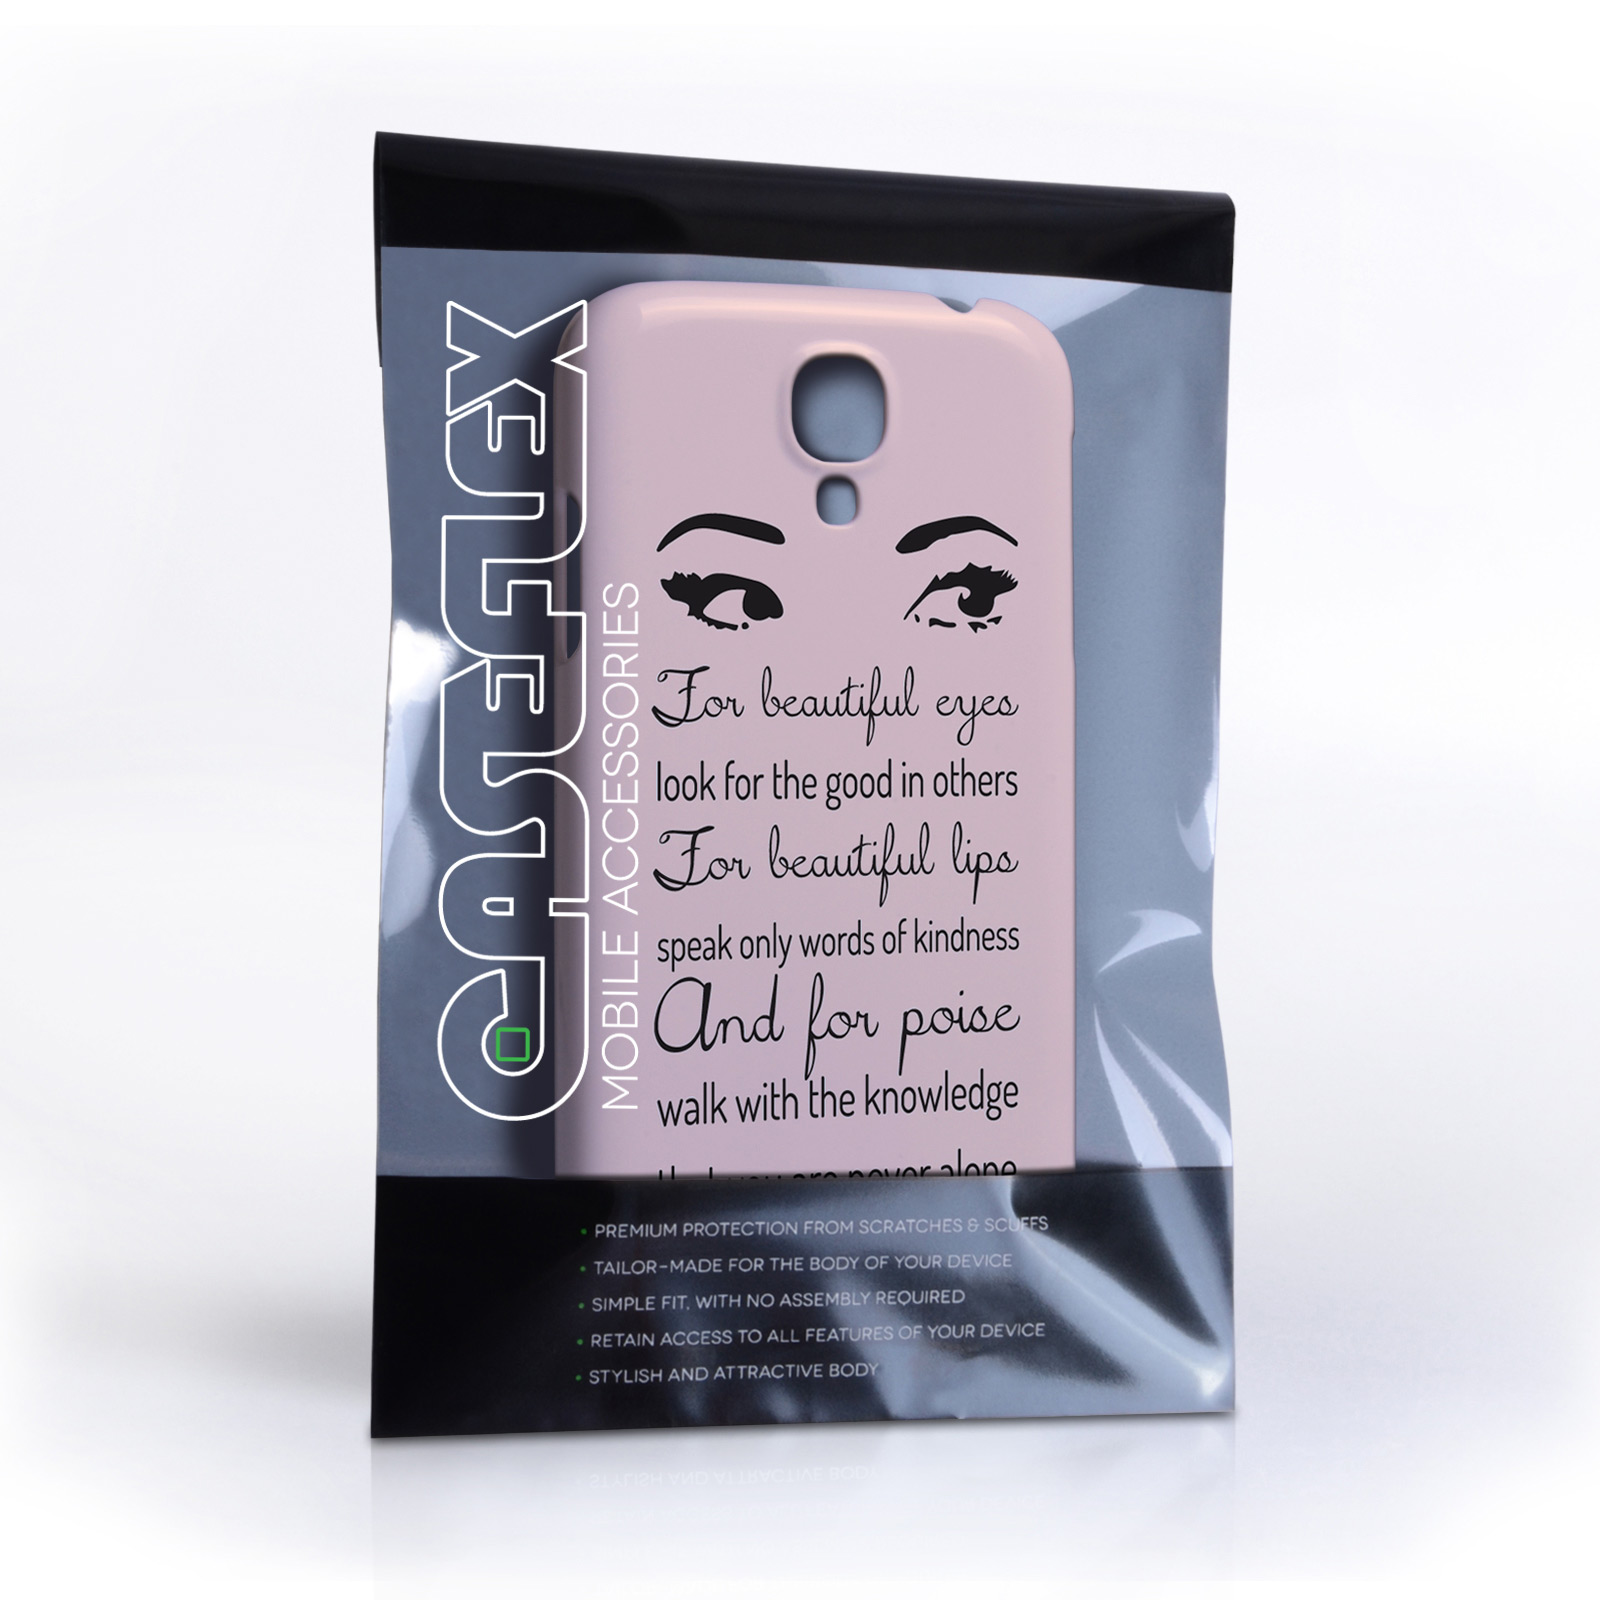 Caseflex Samsung Galaxy S4 Audrey Hepburn ‘Eyes’ Quote Case